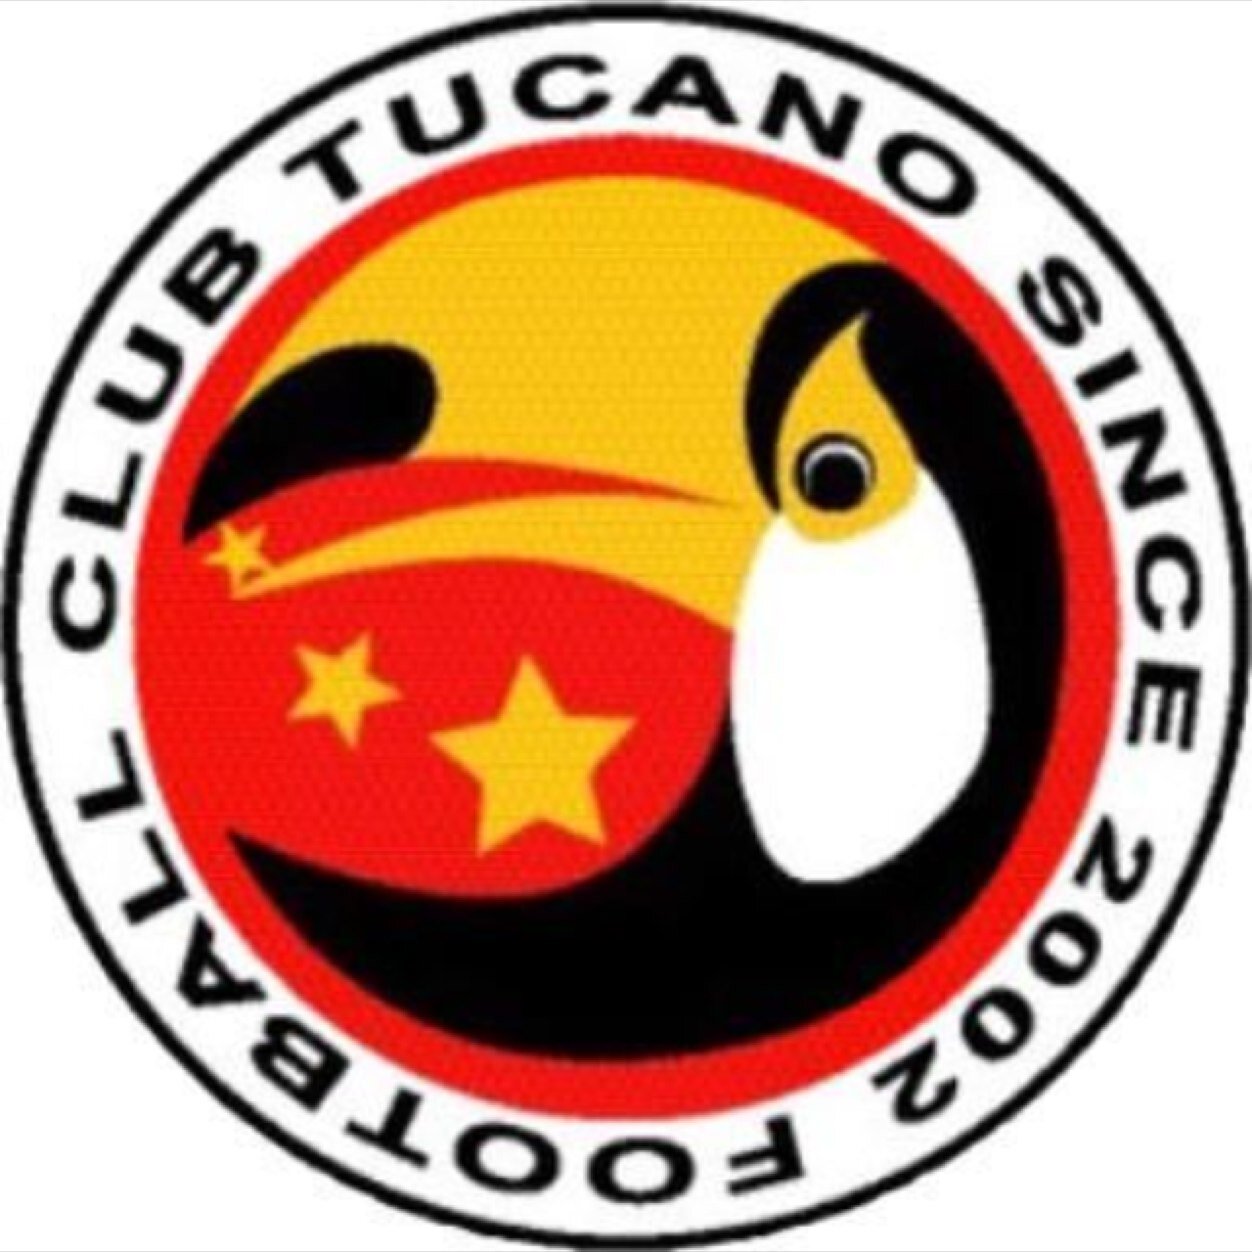 FCトッカーノは、元日本代表三浦泰年が創設した世田谷区で活動する、少年サッカークラブチームです。U-6(未就学児)からジュニアユースチームU-15(中学3年生)まで11のカテゴリーで子どもたちの指導と育成にあたっています。